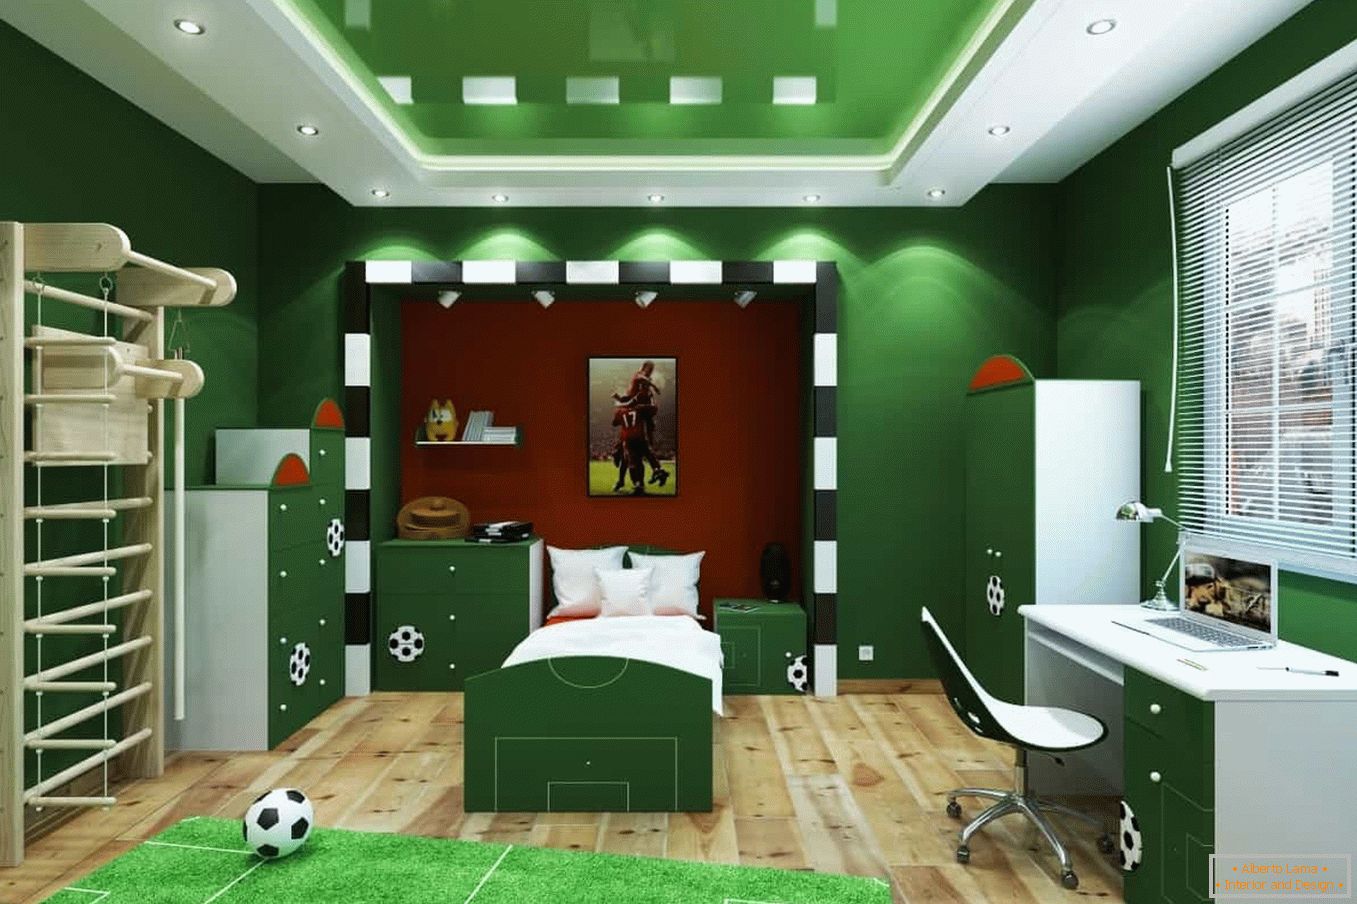 Зелена соба - фудбалско игралиште